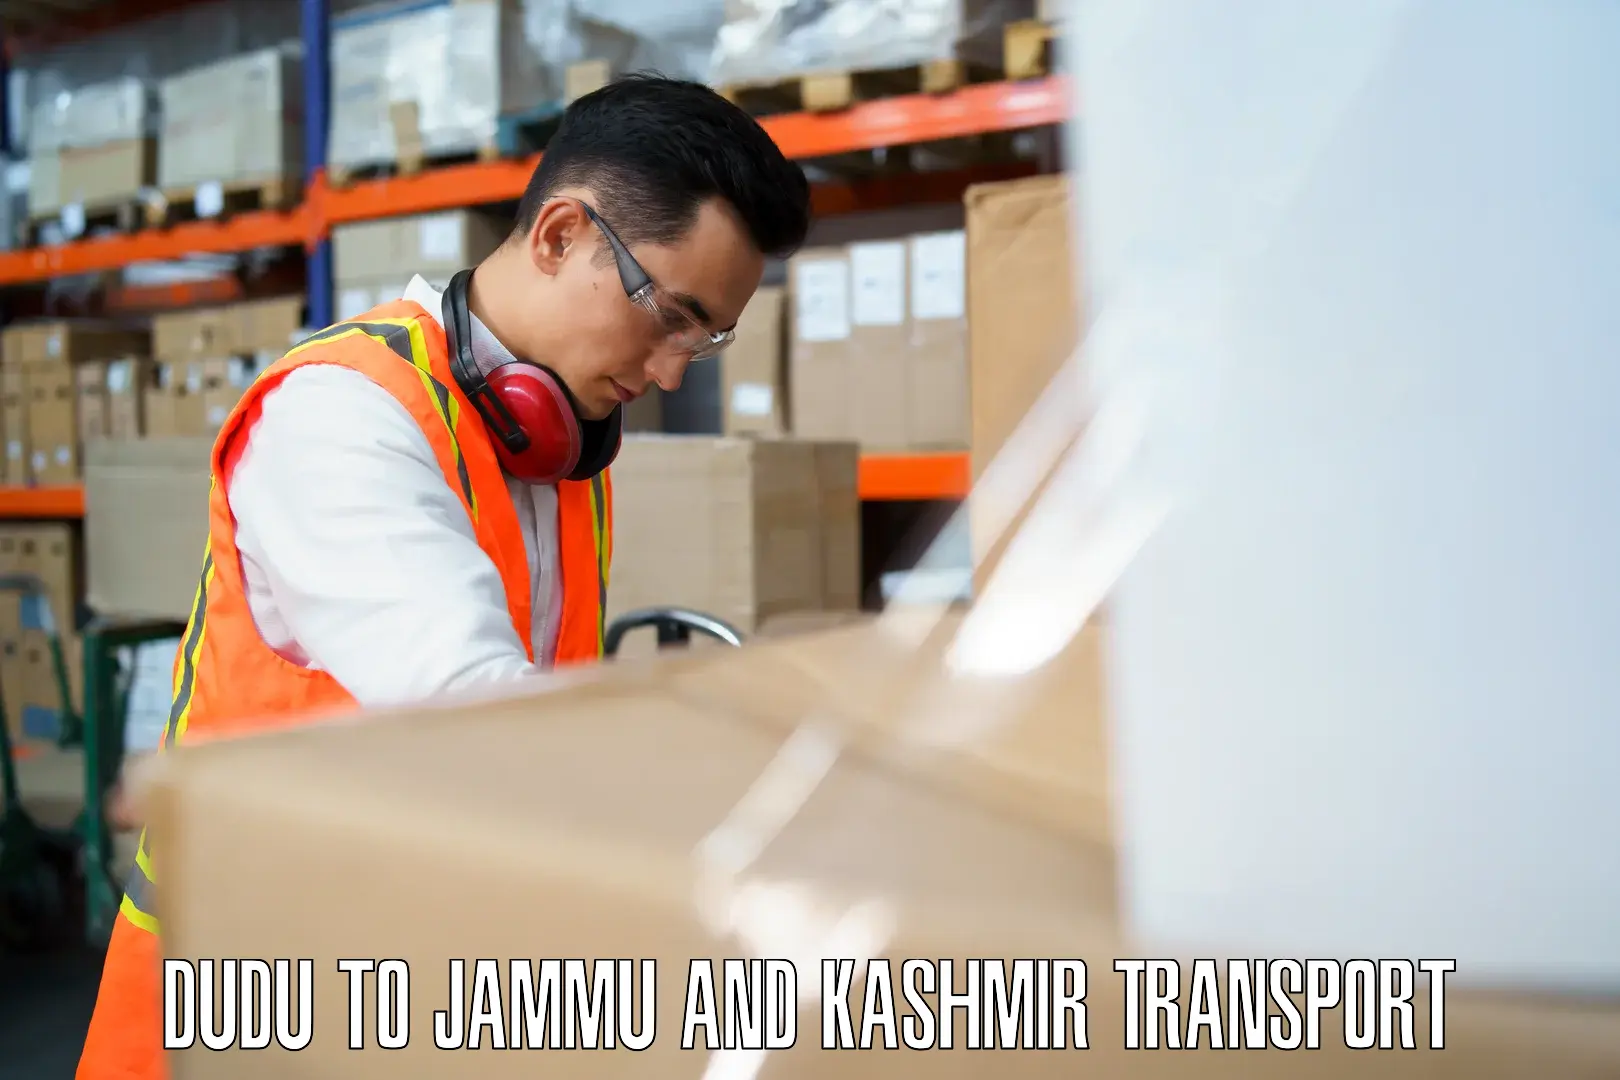 Daily parcel service transport Dudu to University of Jammu